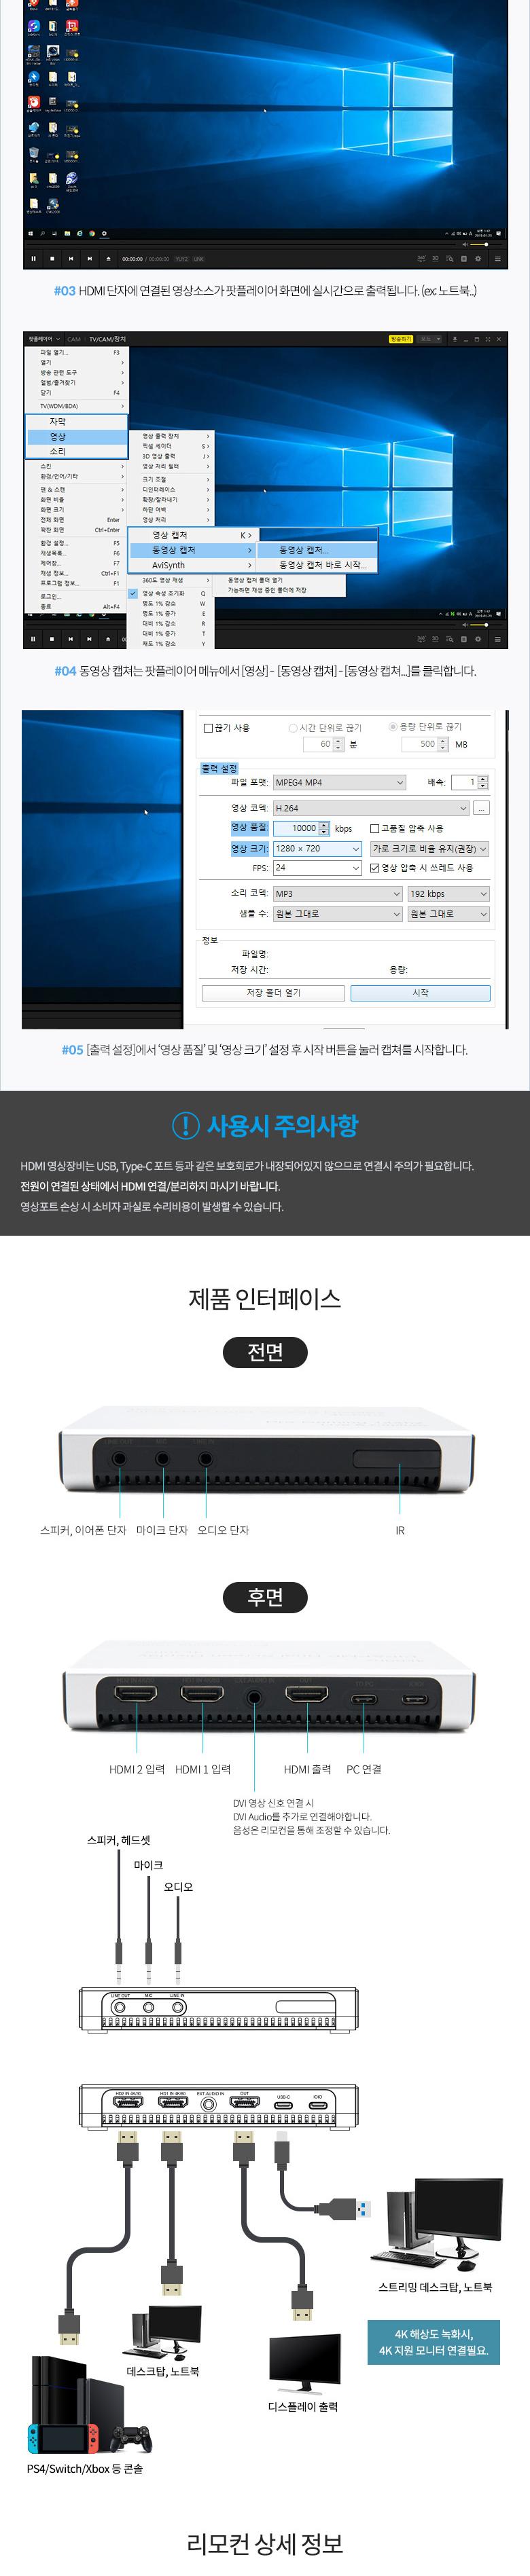 Coms USB 3.1(Type C) HDMI ĸĹڽ ĸĺ ִ 4K 60Hz  ũ PIP PMP  HDMIĸĹڽ HDMIĸĺ ĸĹڽ ĸĺ TYPECHDMIĸĹڽ TYPECHDMIĸĺ TYPECĸĹڽ TYPECĸĺ CŸHDMIĸĹڽ CŸHDMIĸĺ